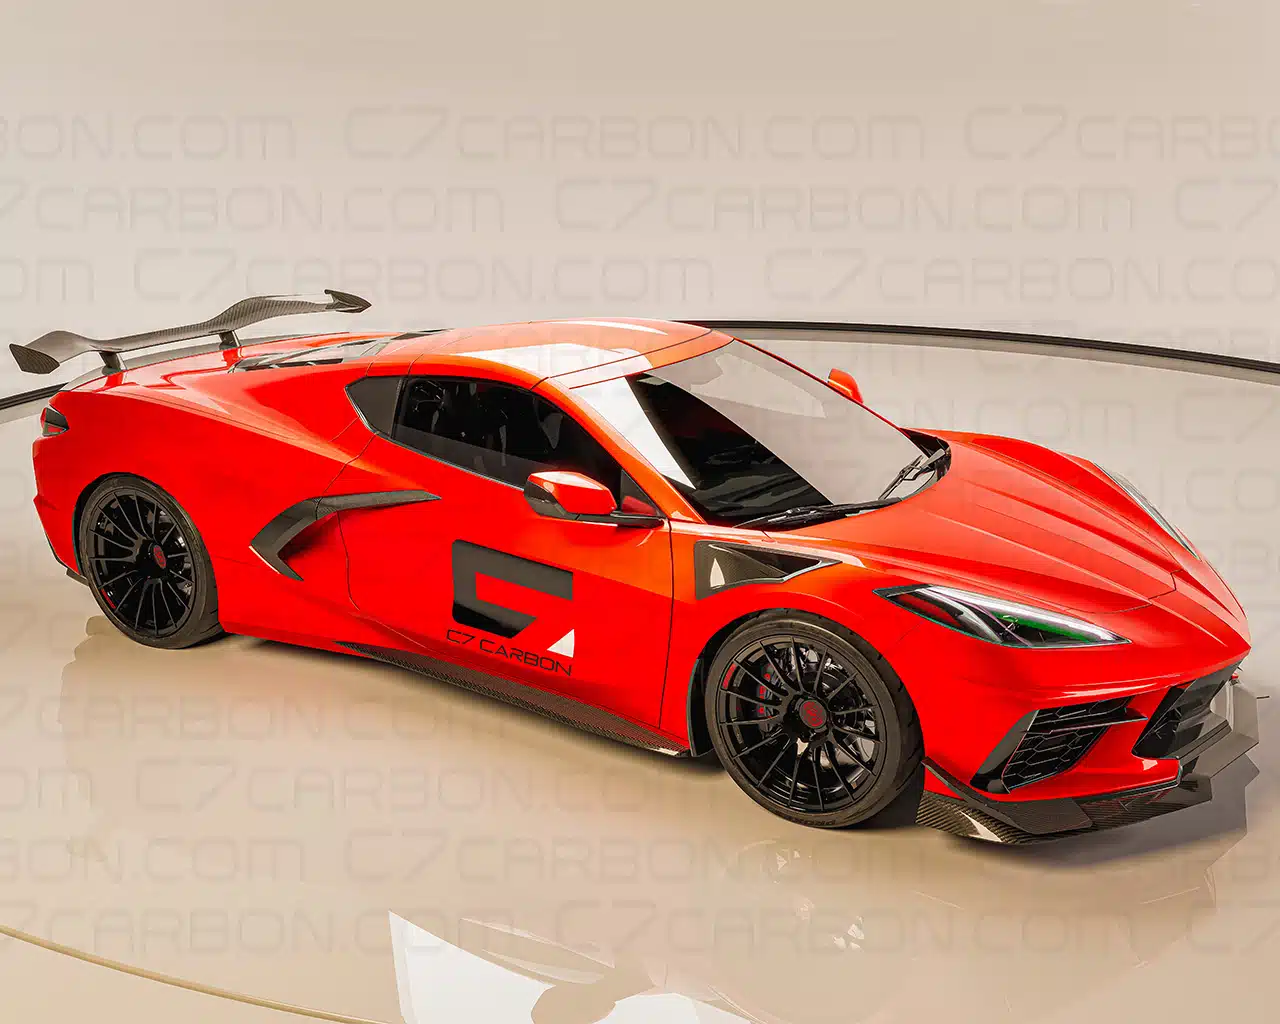 Corvette C8 Z06 Style Front Splitter for Corvette Stingray, 1 Piece Design, In Carbon Fiber